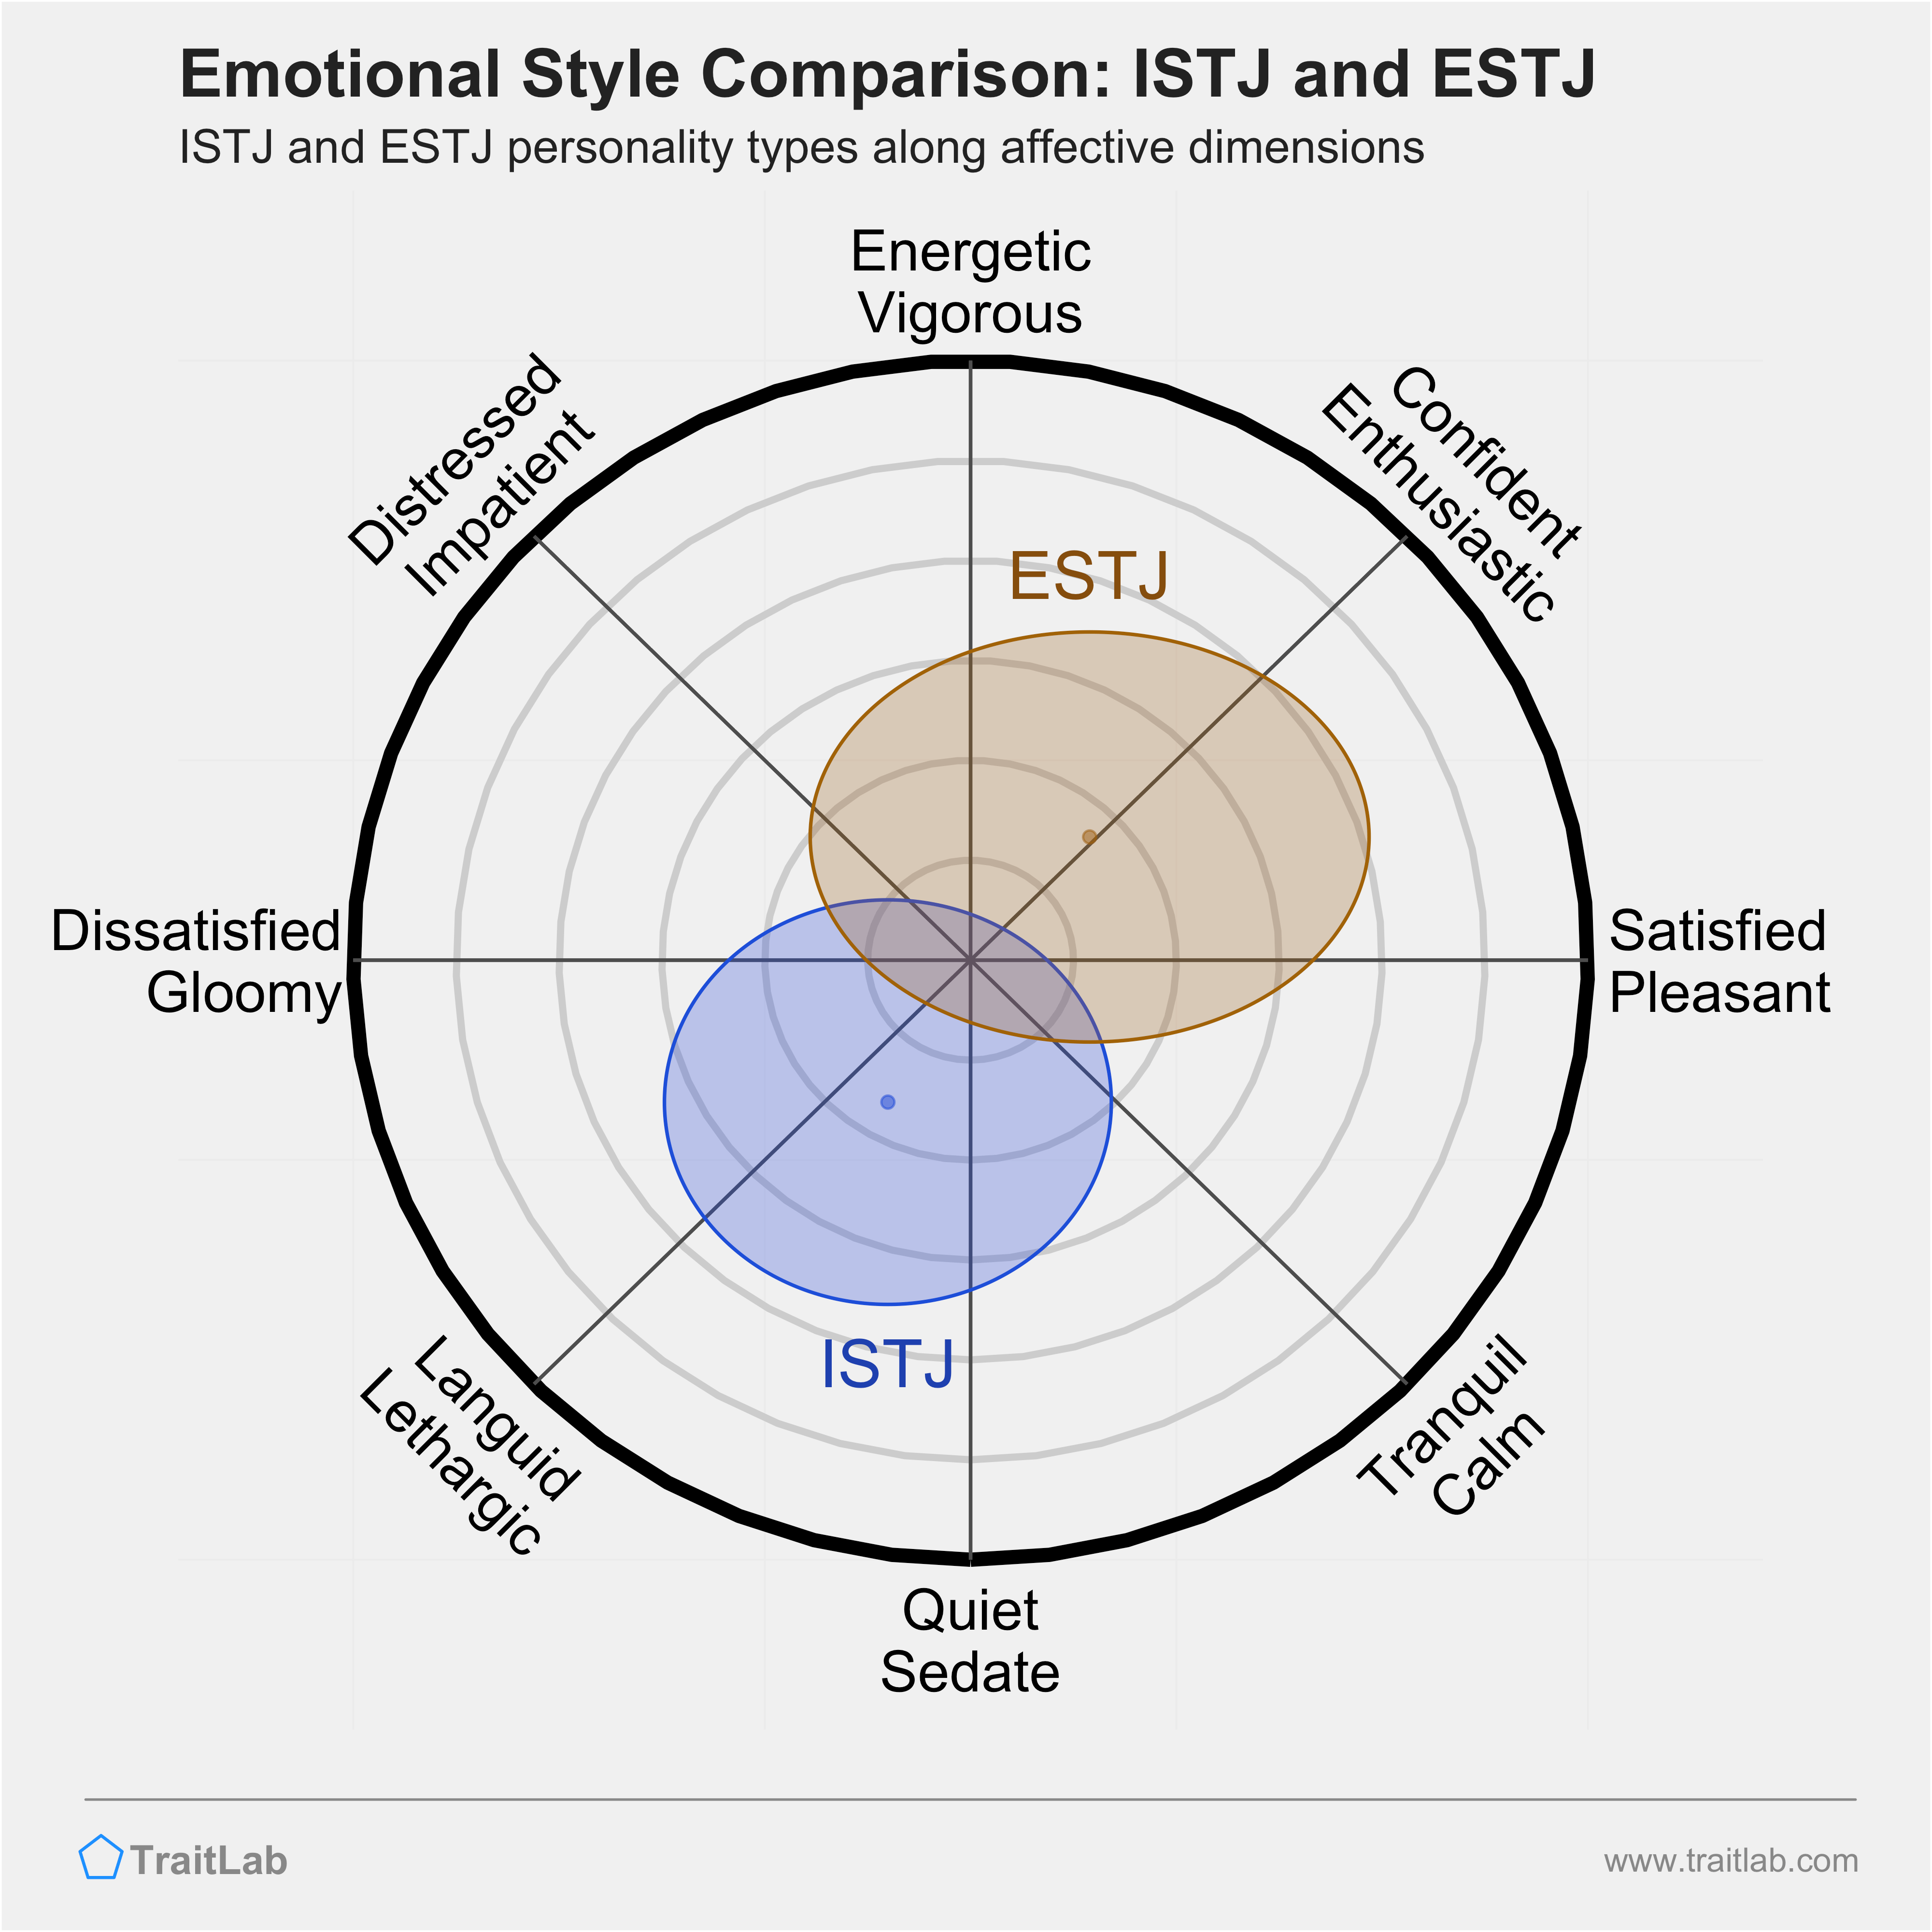 ISTJ and ESTJ comparison across emotional (affective) dimensions